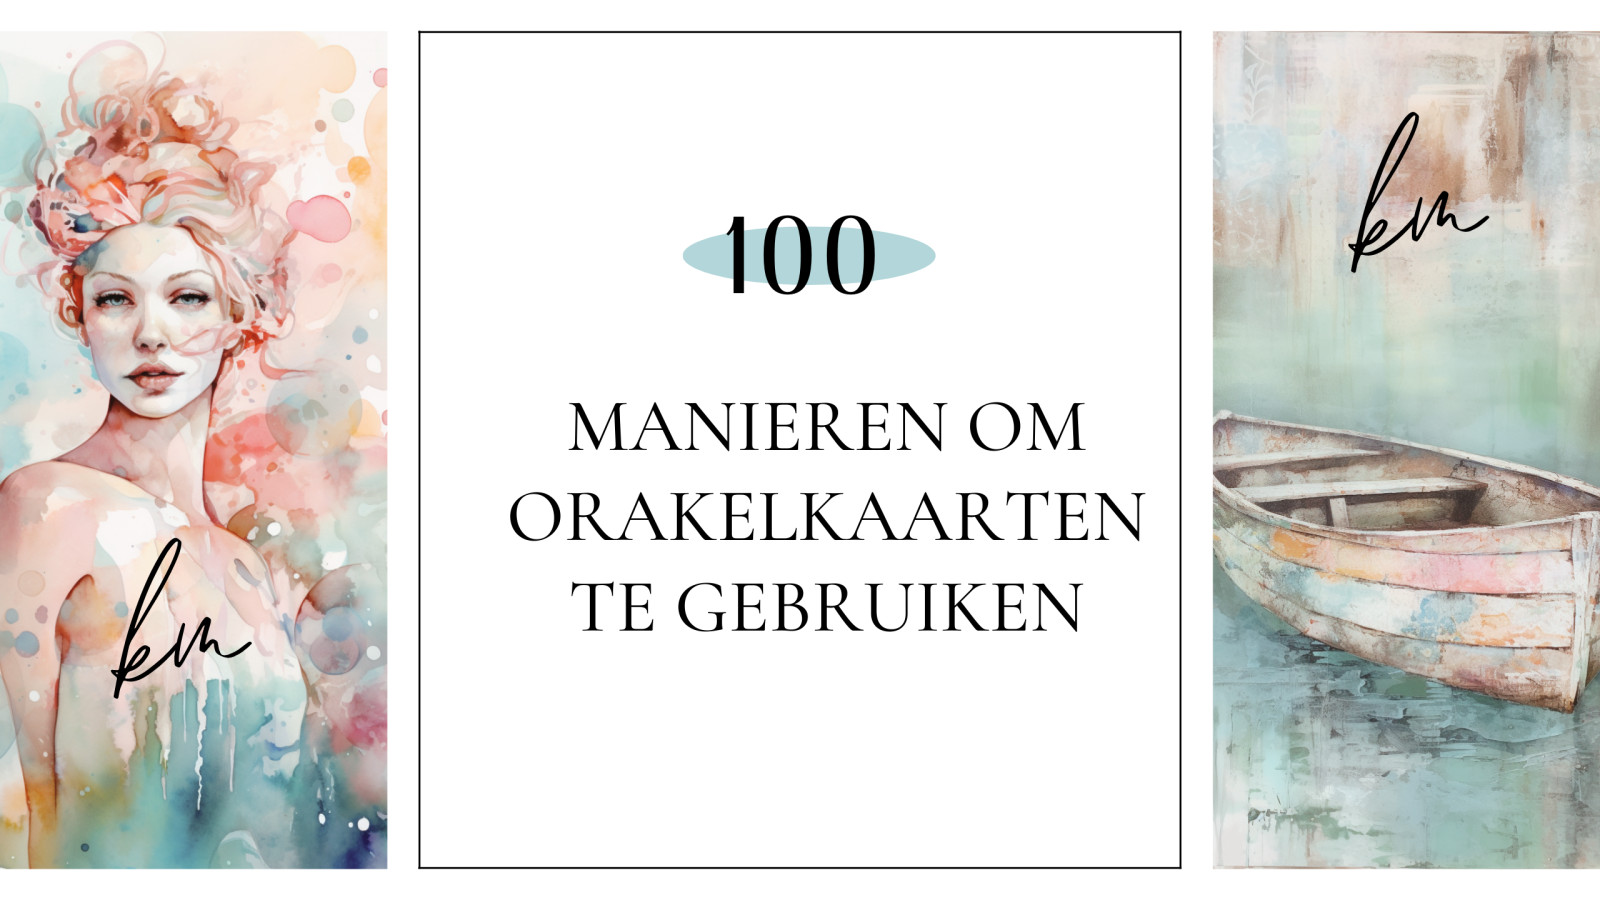 100 manieren om orakelkaarten te gebruiken